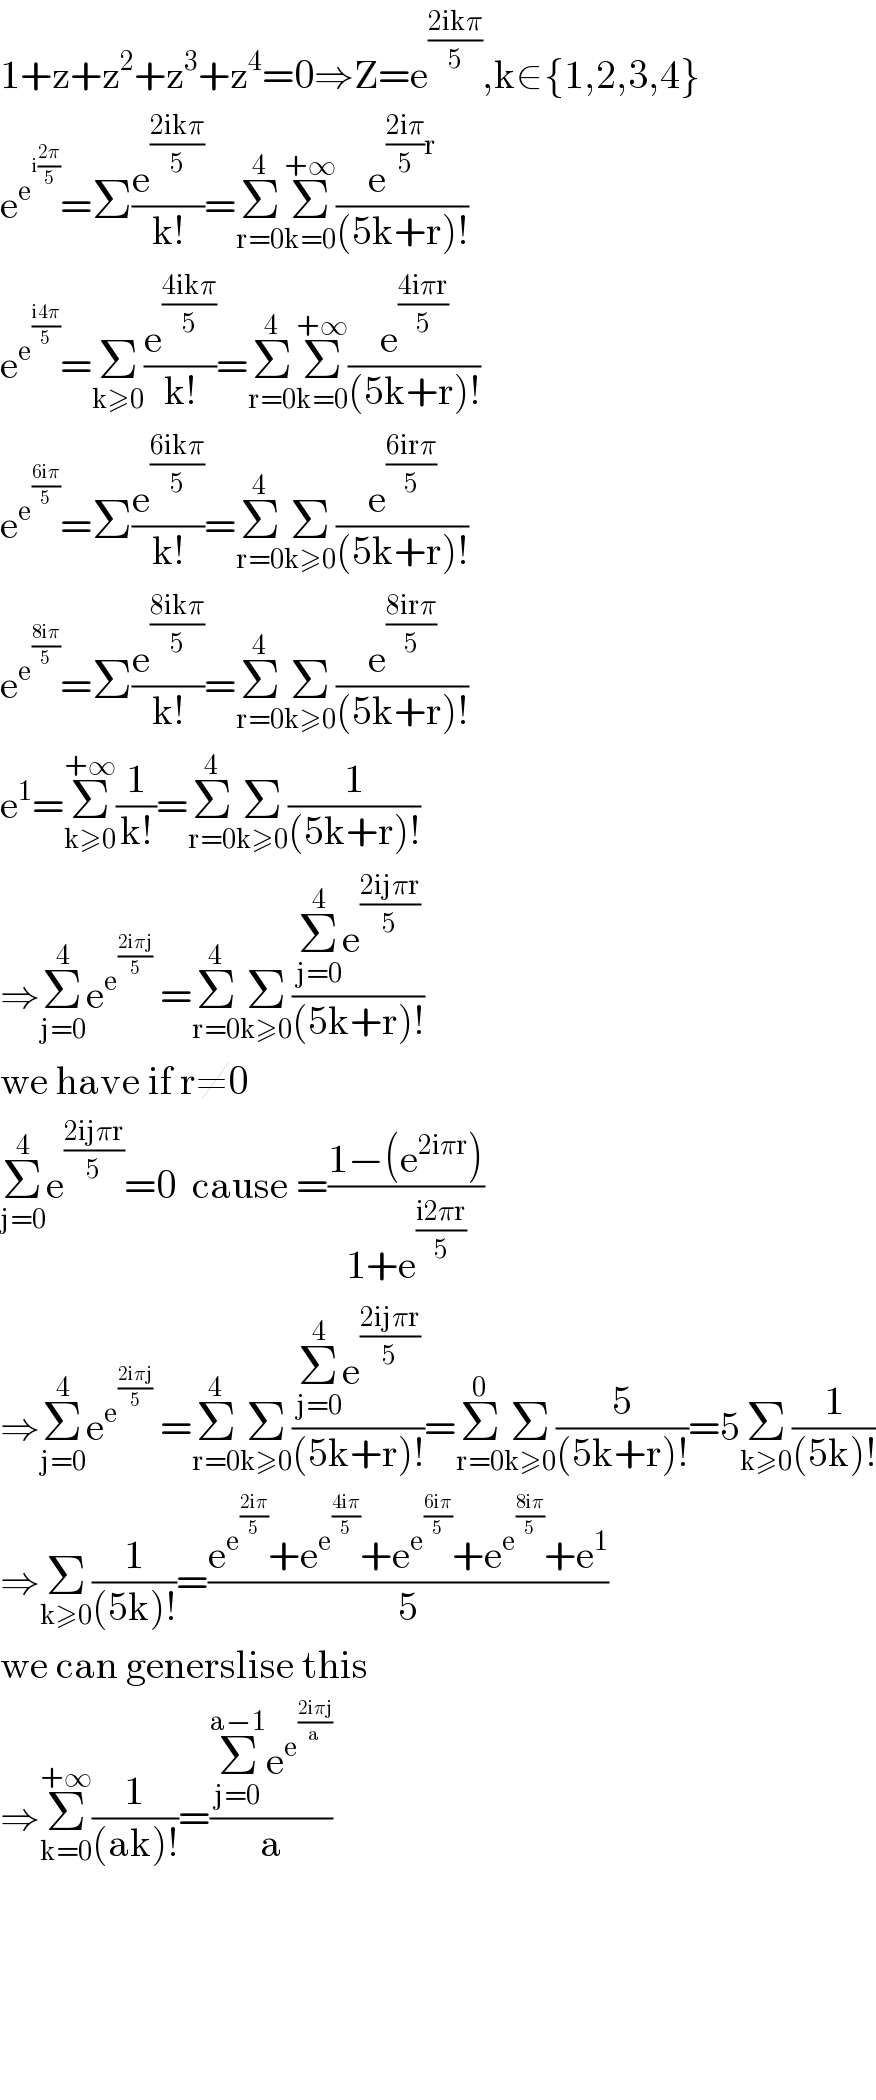 1+z+z^2 +z^3 +z^4 =0⇒Z=e^((2ikπ)/5) ,k∈{1,2,3,4}   e^e^(i((2π)/5))  =Σ(e^((2ikπ)/5) /(k!))=Σ_(r=0) ^4 Σ_(k=0) ^(+∞) (e^(((2iπ)/5)r) /((5k+r)!))  e^e^((i4π)/5)  =Σ_(k≥0) ^ (e^((4ikπ)/5) /(k!))=Σ_(r=0) ^4 Σ_(k=0) ^(+∞) (e^((4iπr)/5) /((5k+r)!))  e^e^((6iπ)/5)  =Σ(e^((6ikπ)/5) /(k!))=Σ_(r=0) ^4 Σ_(k≥0) (e^((6irπ)/5) /((5k+r)!))  e^e^((8iπ)/5)  =Σ(e^((8ikπ)/5) /(k!))=Σ_(r=0) ^4 Σ_(k≥0) (e^((8irπ)/5) /((5k+r)!))  e^1 =Σ_(k≥0) ^(+∞) (1/(k!))=Σ_(r=0) ^4 Σ_(k≥0) (1/((5k+r)!))  ⇒Σ_(j=0) ^4 e^e^((2iπj)/5)   =Σ_(r=0) ^4 Σ_(k≥0) ((Σ_(j=0) ^4 e^((2ijπr)/5) )/((5k+r)!))  we have if r≠0  Σ_(j=0) ^4 e^((2ijπr)/5) =0  cause =((1−(e^(2iπr) ))/(1+e^((i2πr)/5) ))  ⇒Σ_(j=0) ^4 e^e^((2iπj)/5)   =Σ_(r=0) ^4 Σ_(k≥0) ((Σ_(j=0) ^4 e^((2ijπr)/5) )/((5k+r)!))=Σ_(r=0) ^0 Σ_(k≥0) (5/((5k+r)!))=5Σ_(k≥0) (1/((5k)!))  ⇒Σ_(k≥0) (1/((5k)!))=((e^e^((2iπ)/5)  +e^e^((4iπ)/5)  +e^e^((6iπ)/5)  +e^e^((8iπ)/5)  +e^1 )/5)  we can generslise this  ⇒Σ_(k=0) ^(+∞) (1/((ak)!))=((Σ_(j=0) ^(a−1) e^e^((2iπj)/a)  )/a)          